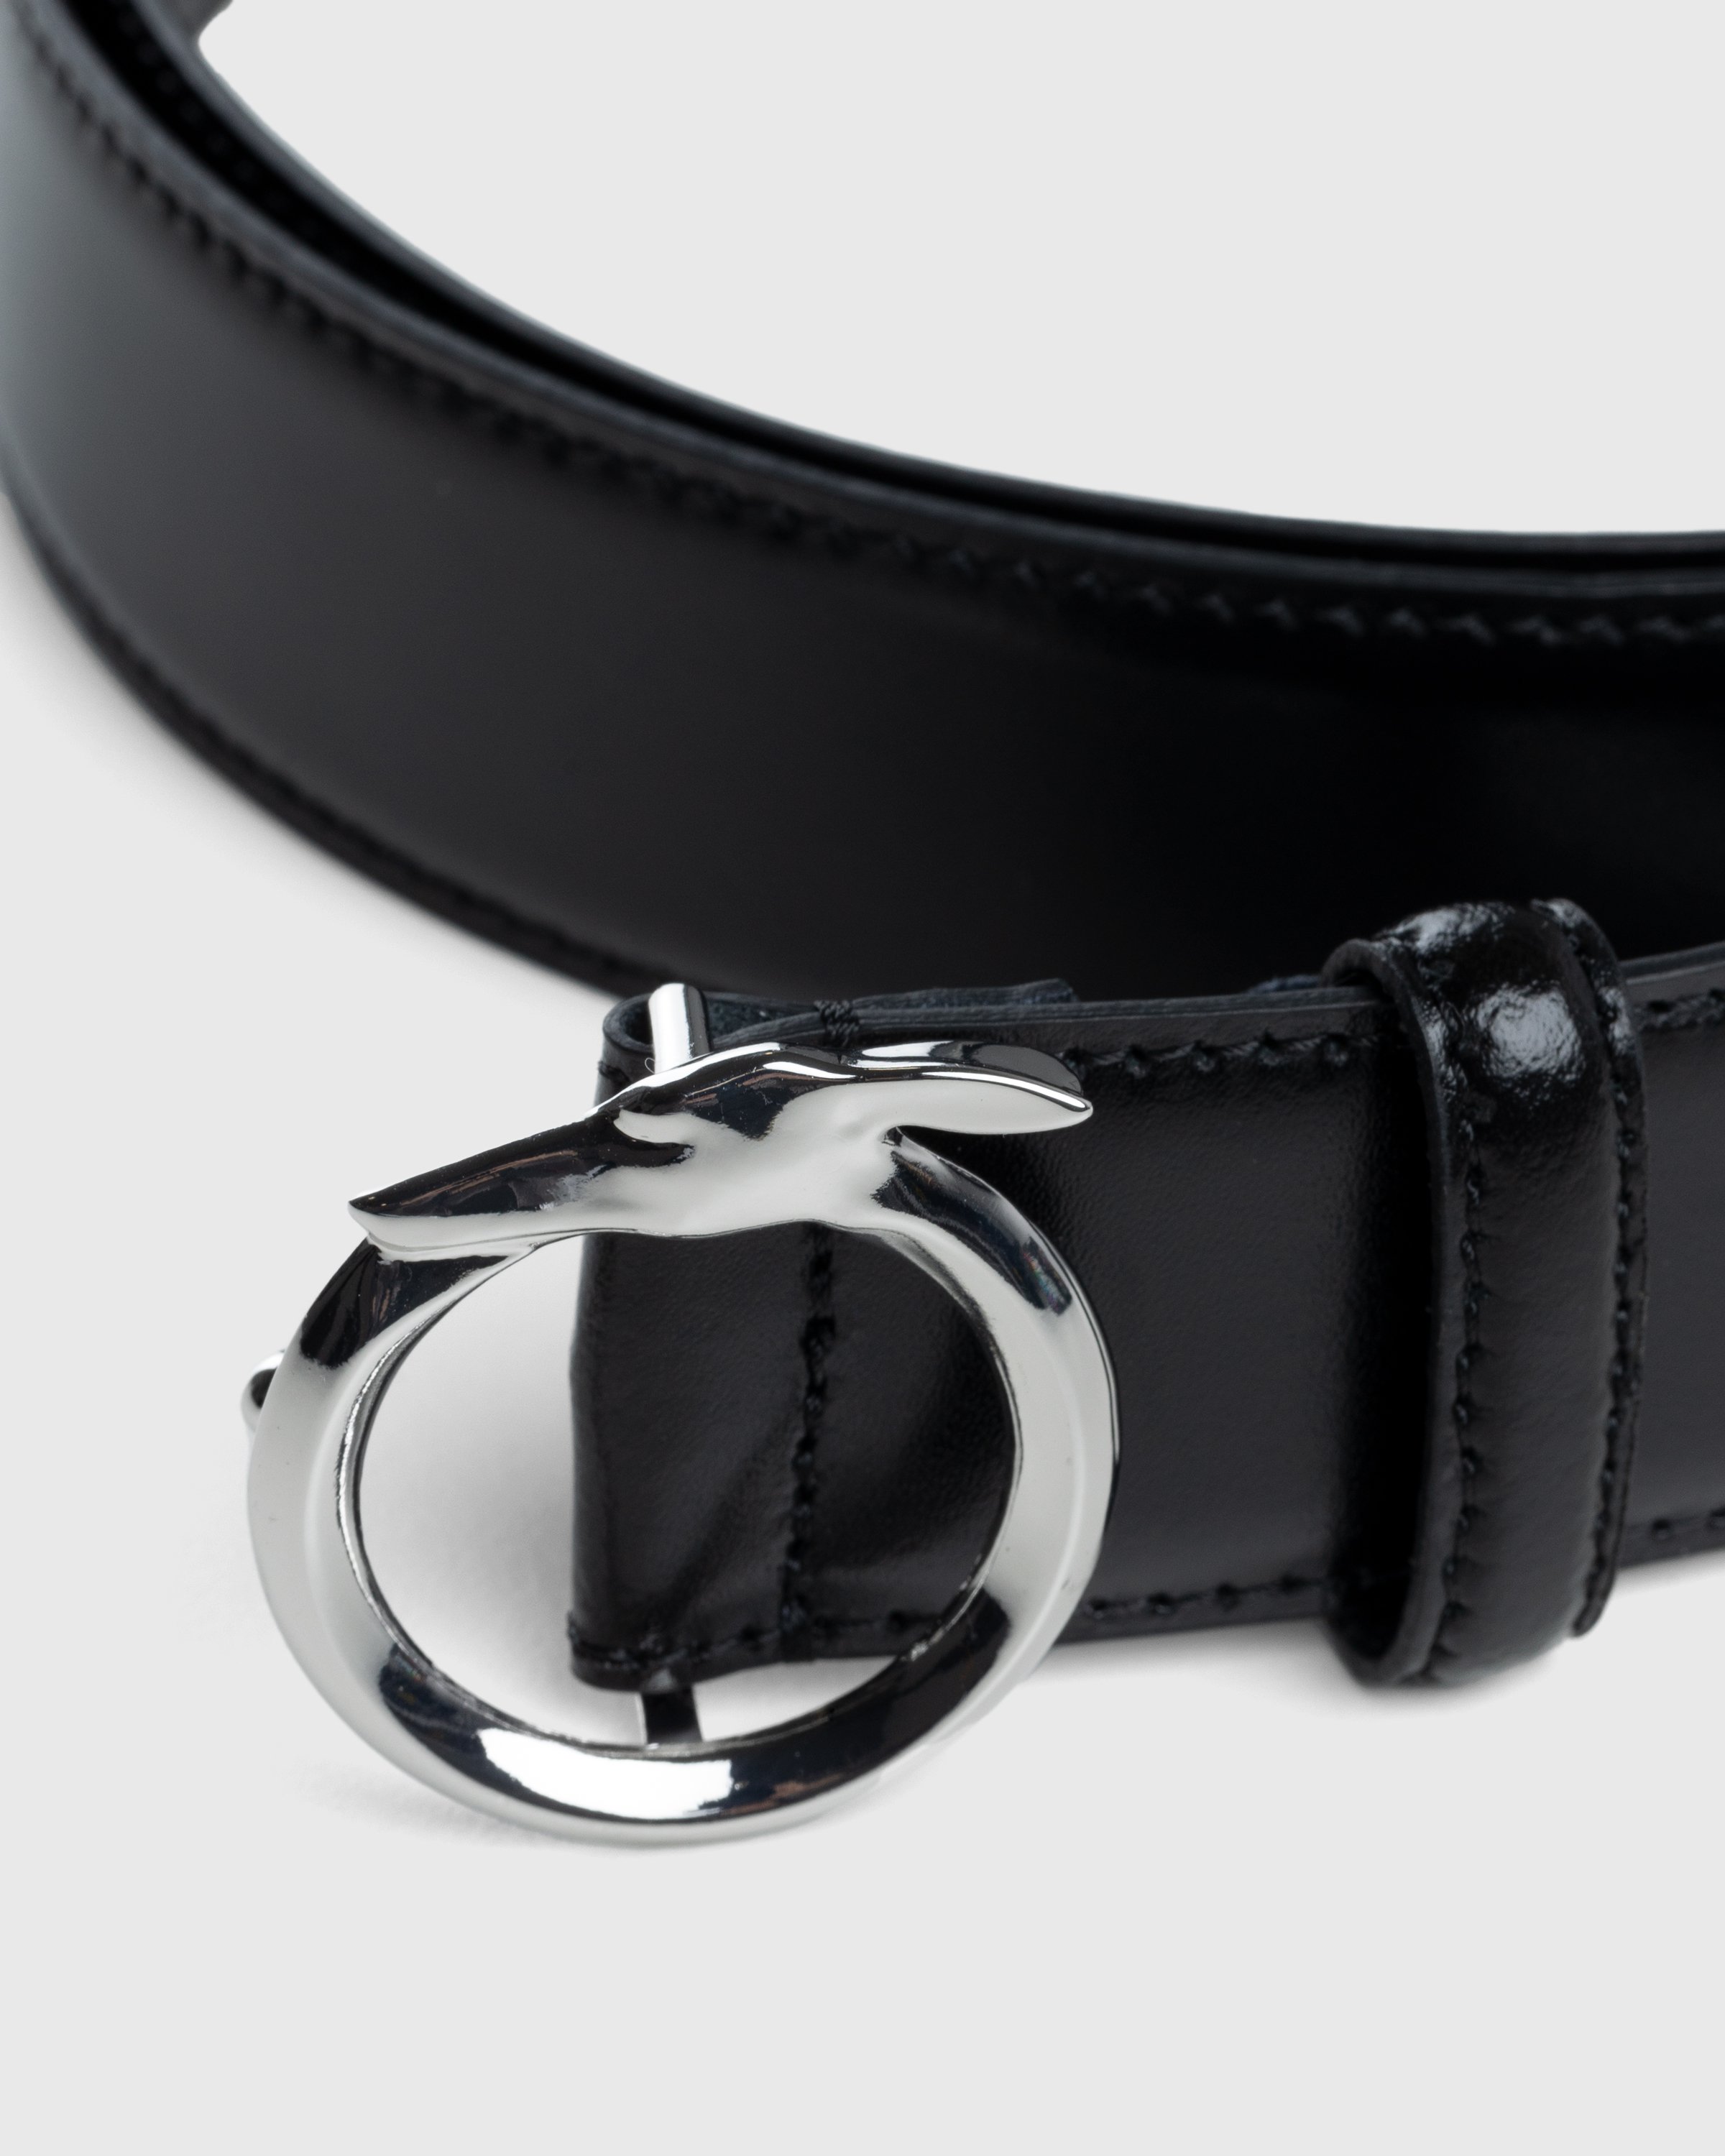 Trussardi - Leather Greyhound Belt Black - Accessories - Black - Image 2